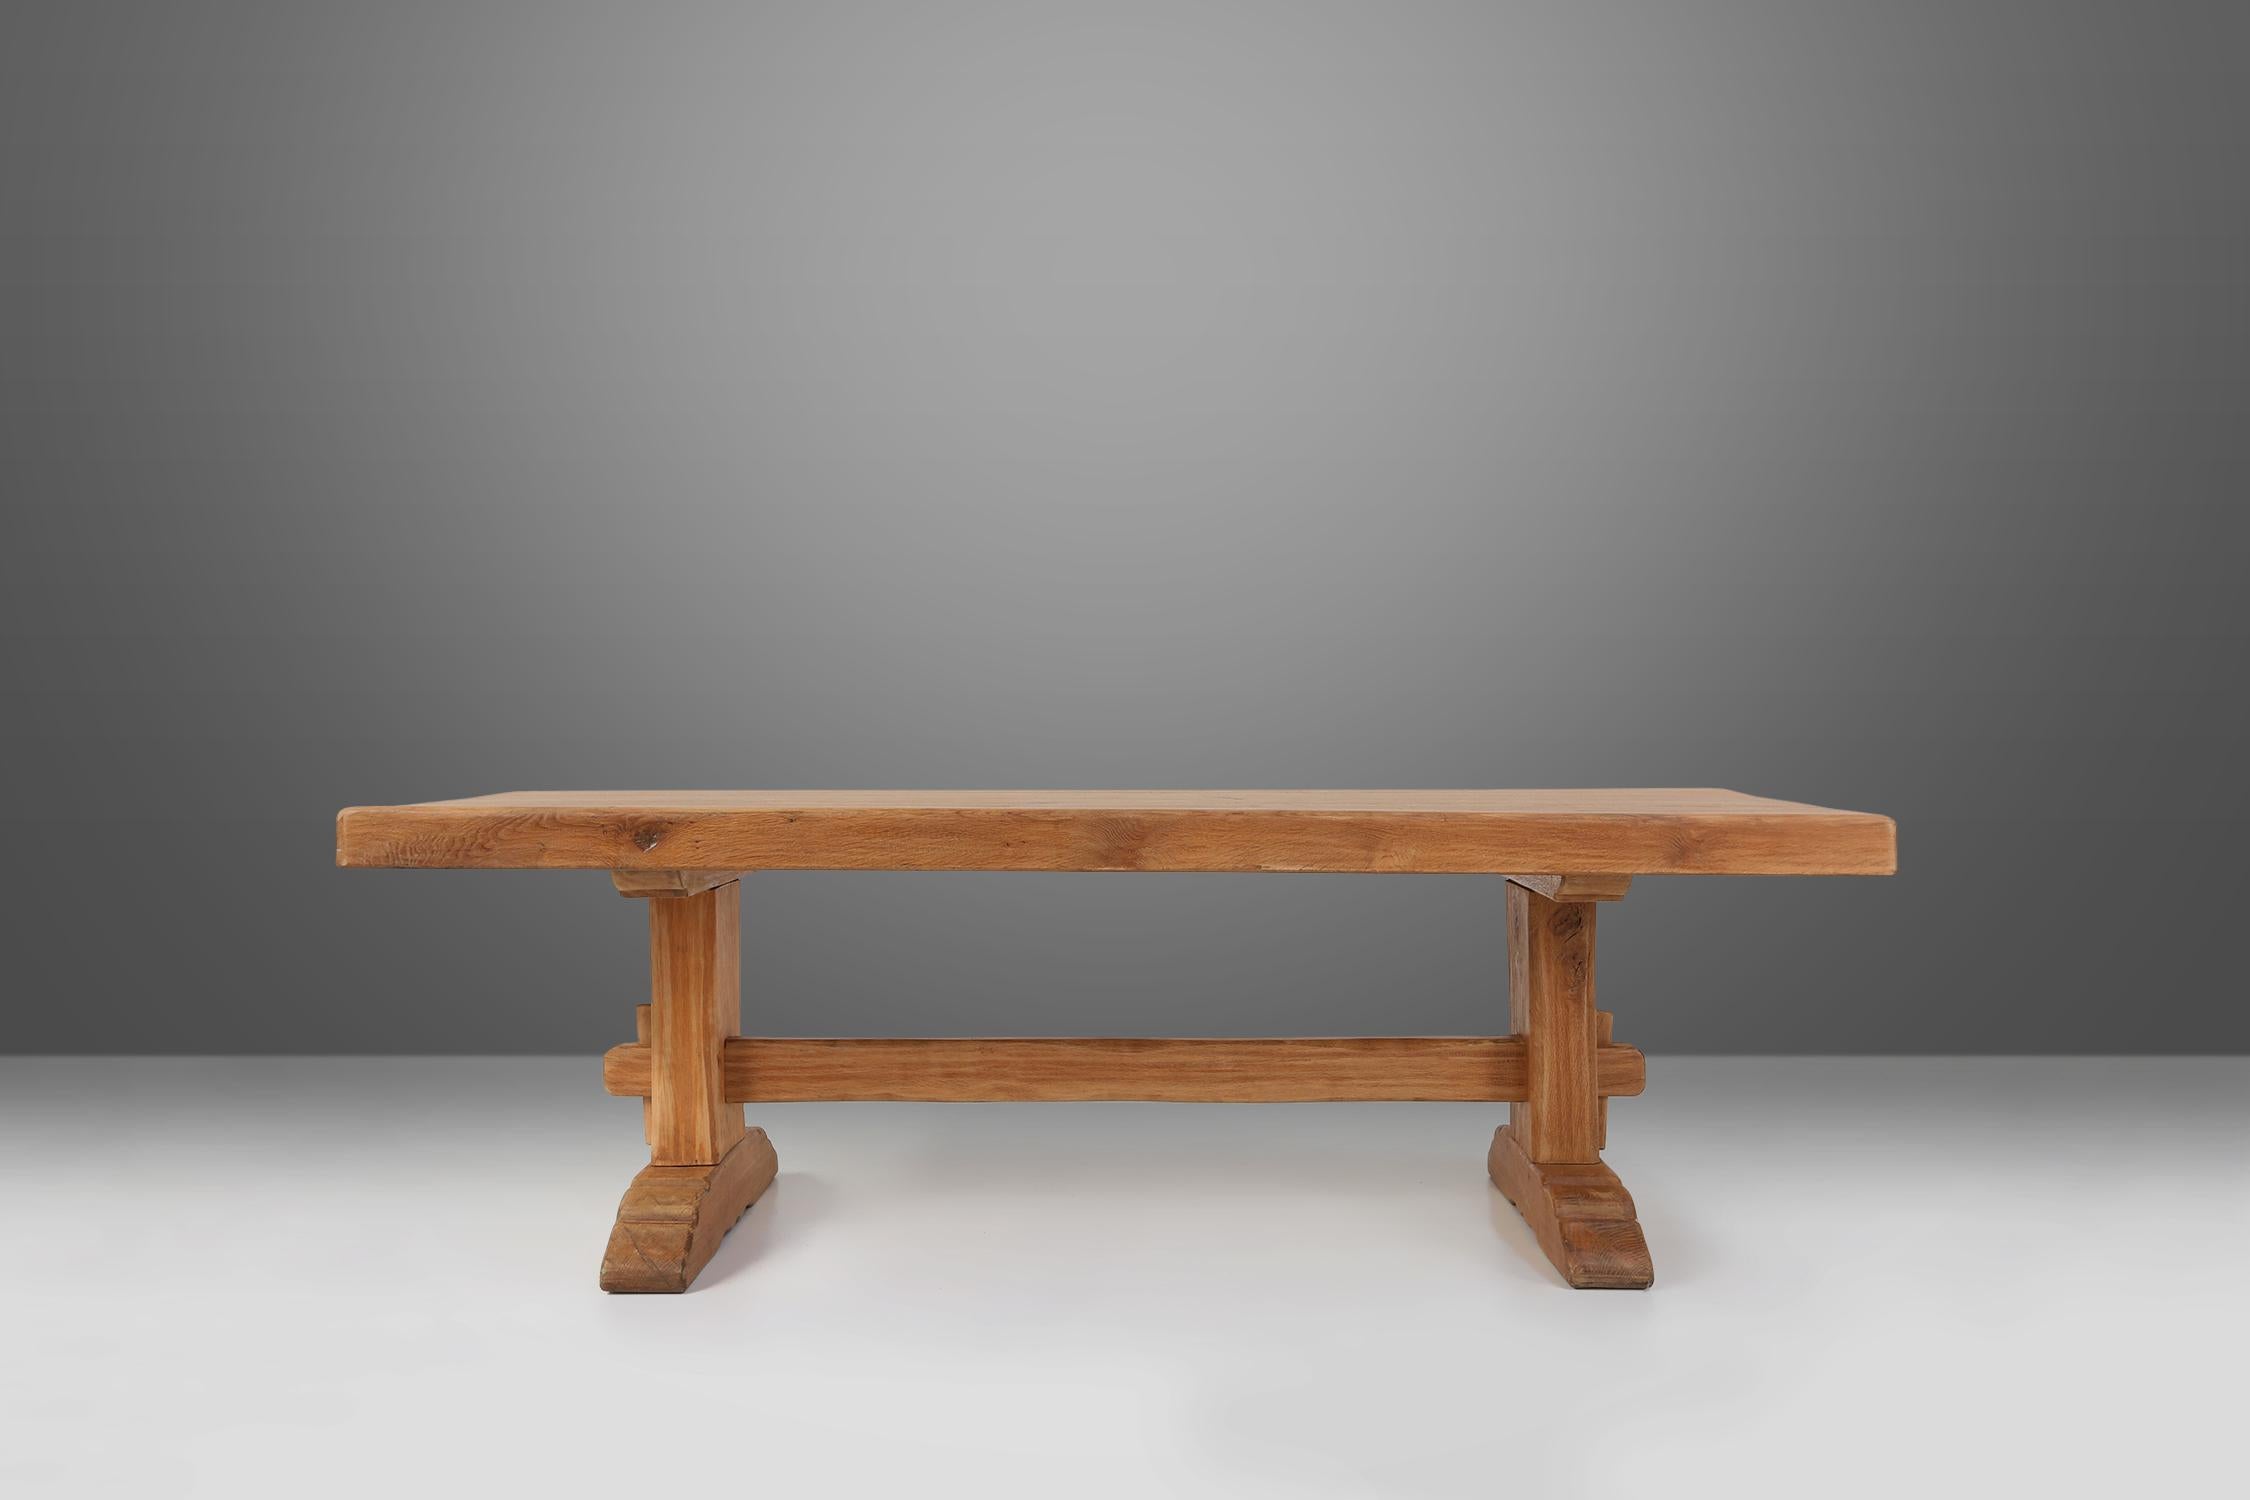 Dieser zeitlose, rustikale Holztisch verbindet mühelos Vintage-Ästhetik mit Funktionalität. Dieses aus hochwertigem Holz gefertigte Tischset zeugt von der Eleganz und Langlebigkeit feiner französischer Handwerkskunst. Das rustikale Design, gepaart